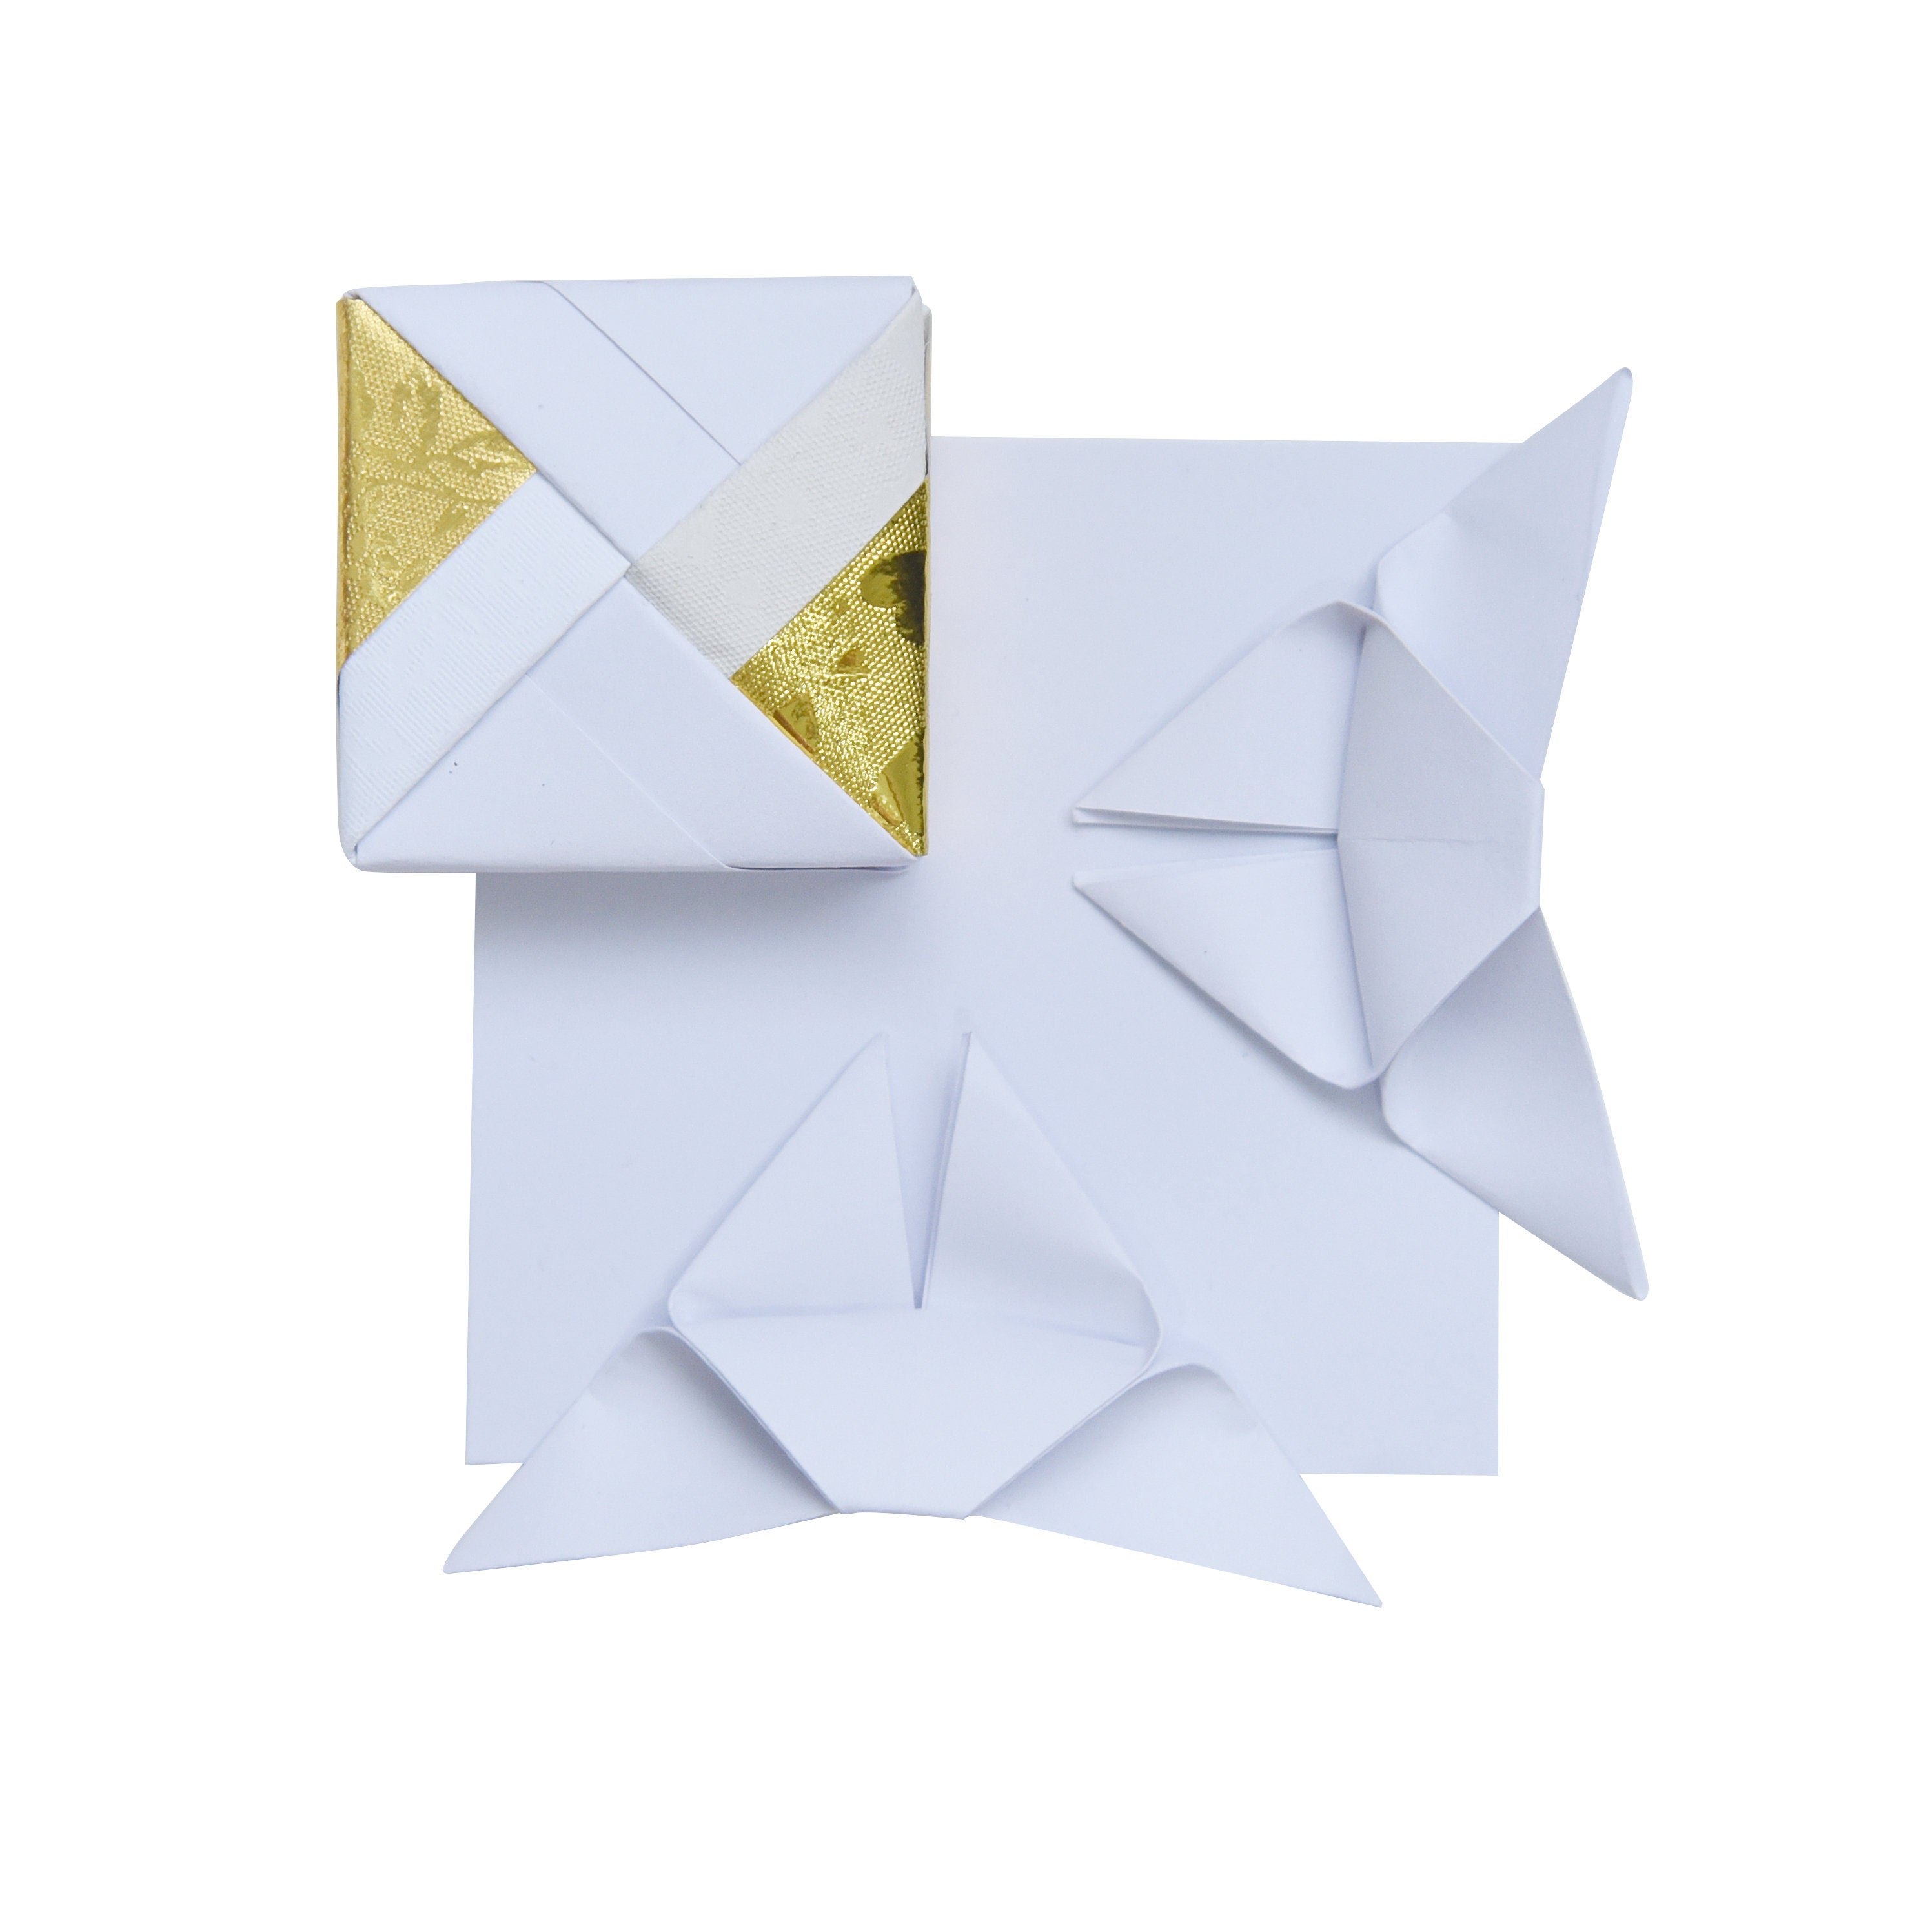 100 fogli di carta origami - 3x3 pollici - Confezione di carta quadrata per piegare, gru origami e decorazioni - S01